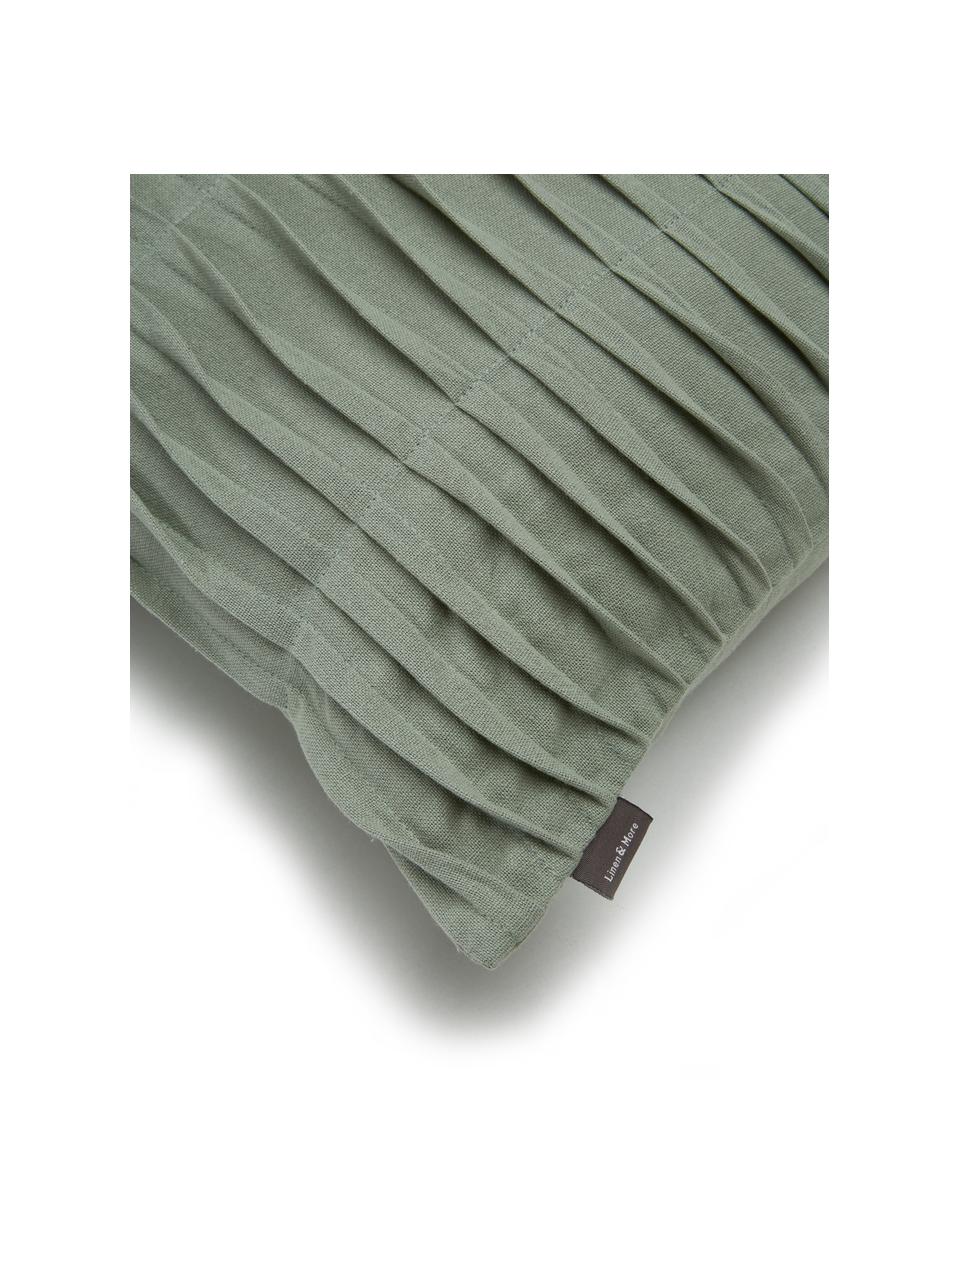 Baumwollkissen Pleated mit geraffter Oberflächer in Mint, mit Inlett, Baumwolle, Mint, 45 x 45 cm